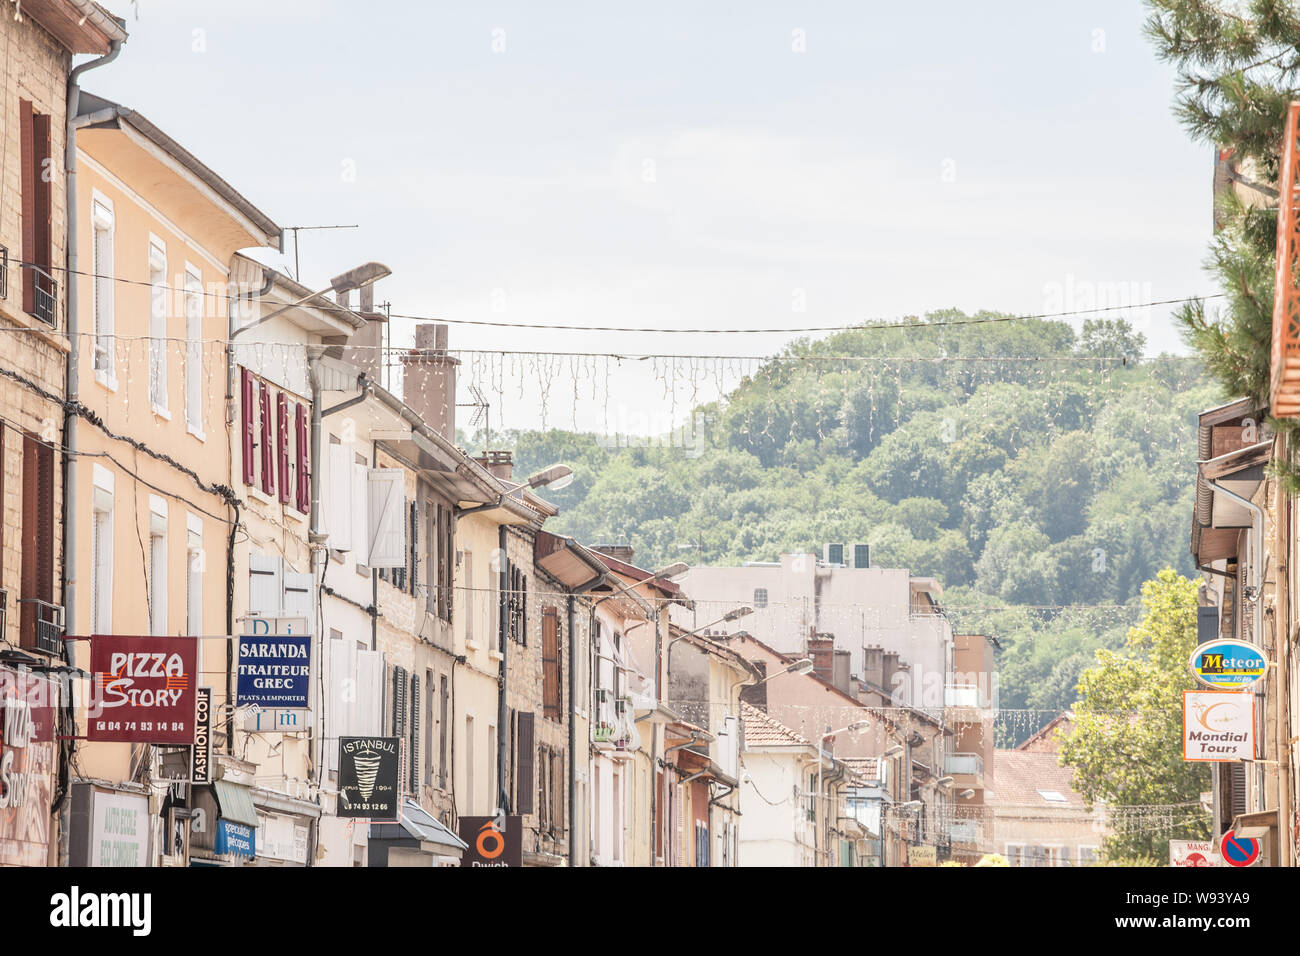 De BOURGOIN JALLIEU, Francia - Julio 17, 2019: los viejos edificios de arquitectura tradicional francesa en un pueblo comercial calle de Bourgoin-Jallieu, con s Foto de stock